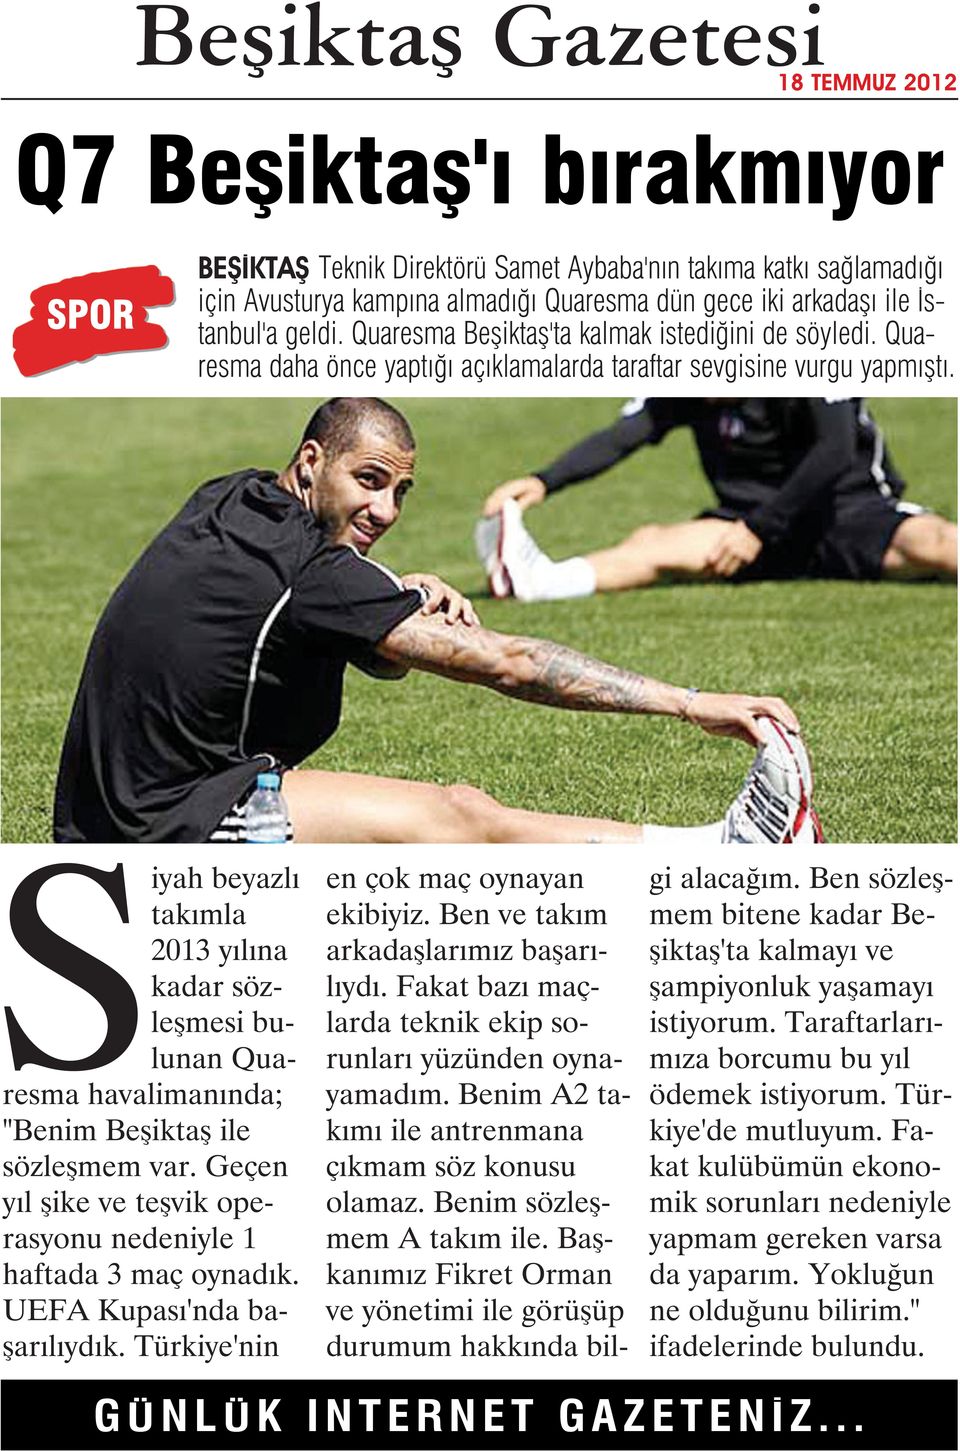 Siyah beyazlı takımla 2013 yılına kadar sözleşmesi bulunan Quaresma havalimanında; "Benim Beşiktaş ile sözleşmem var. Geçen yıl şike ve teşvik operasyonu nedeniyle 1 haftada 3 maç oynadık.